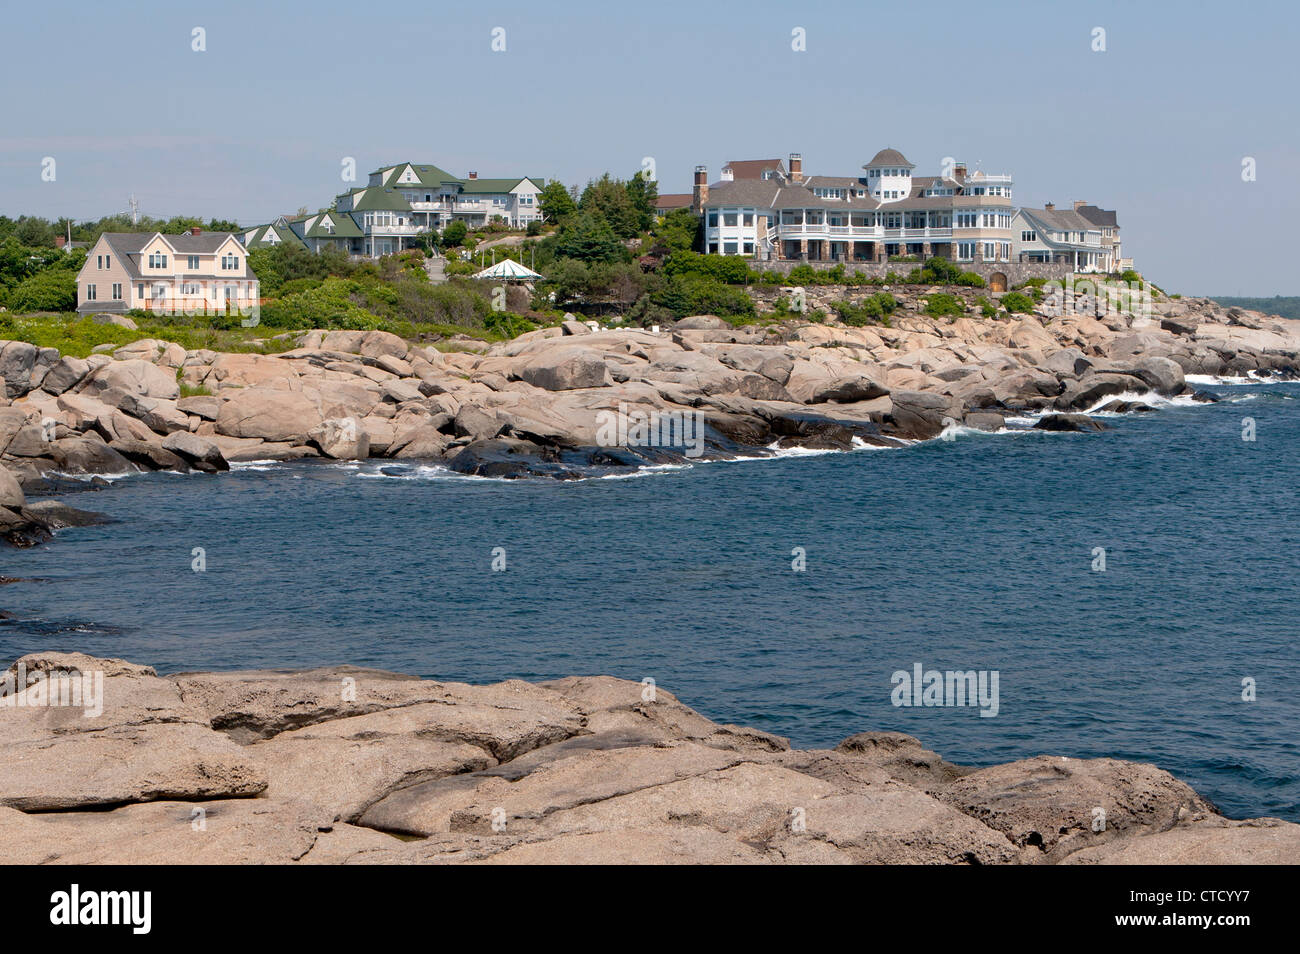 Palazzi residenziali su di un promontorio roccioso, Cape Neddick, Maine, Stati Uniti d'America Foto Stock